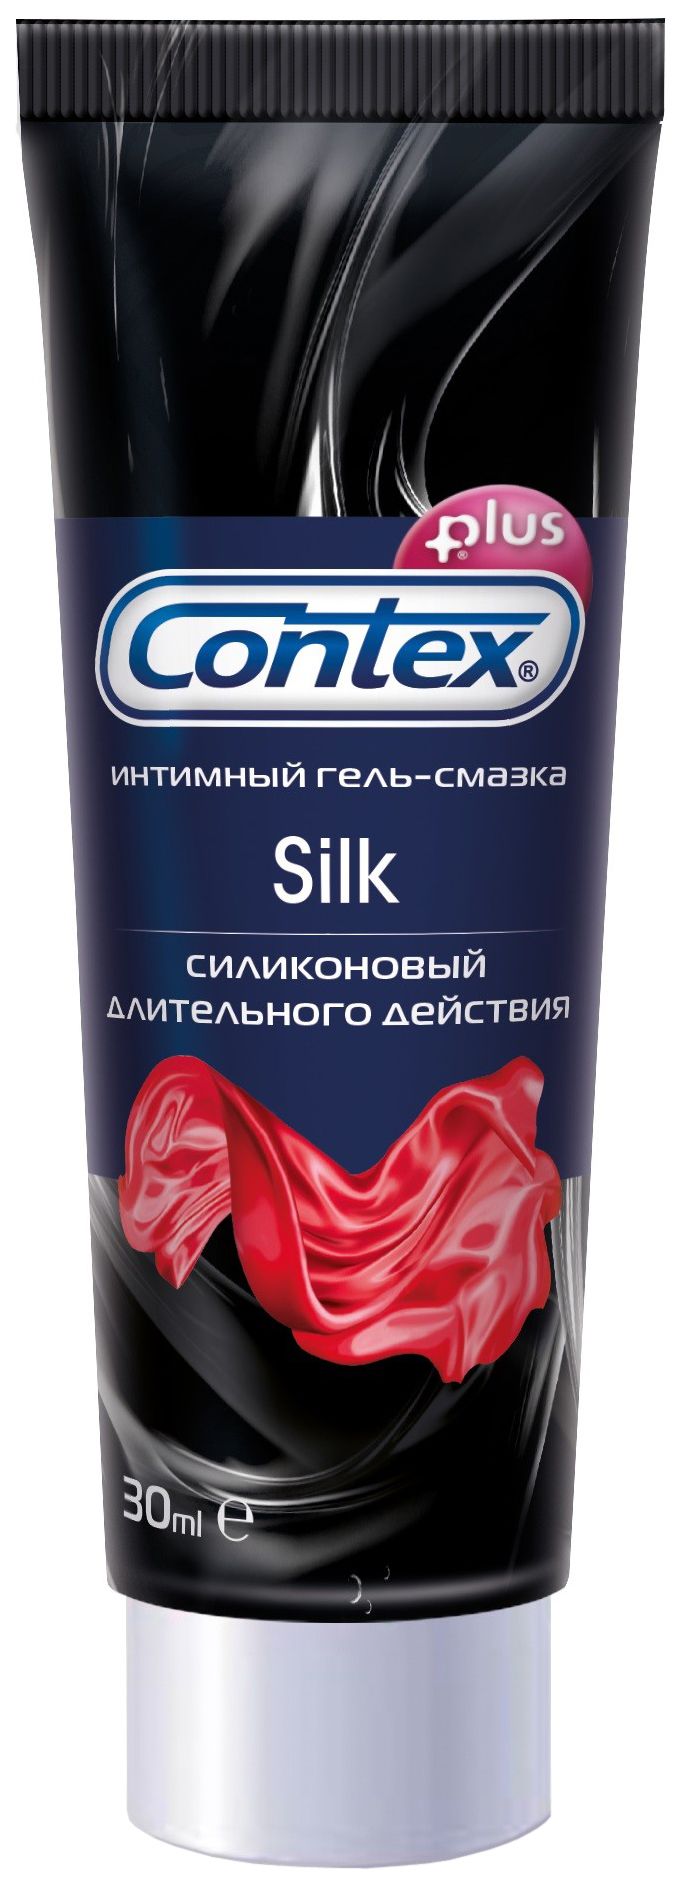 Гель-смазка Contex Silk, гель, из силикона (силиконовый), 30 мл, 1 шт.